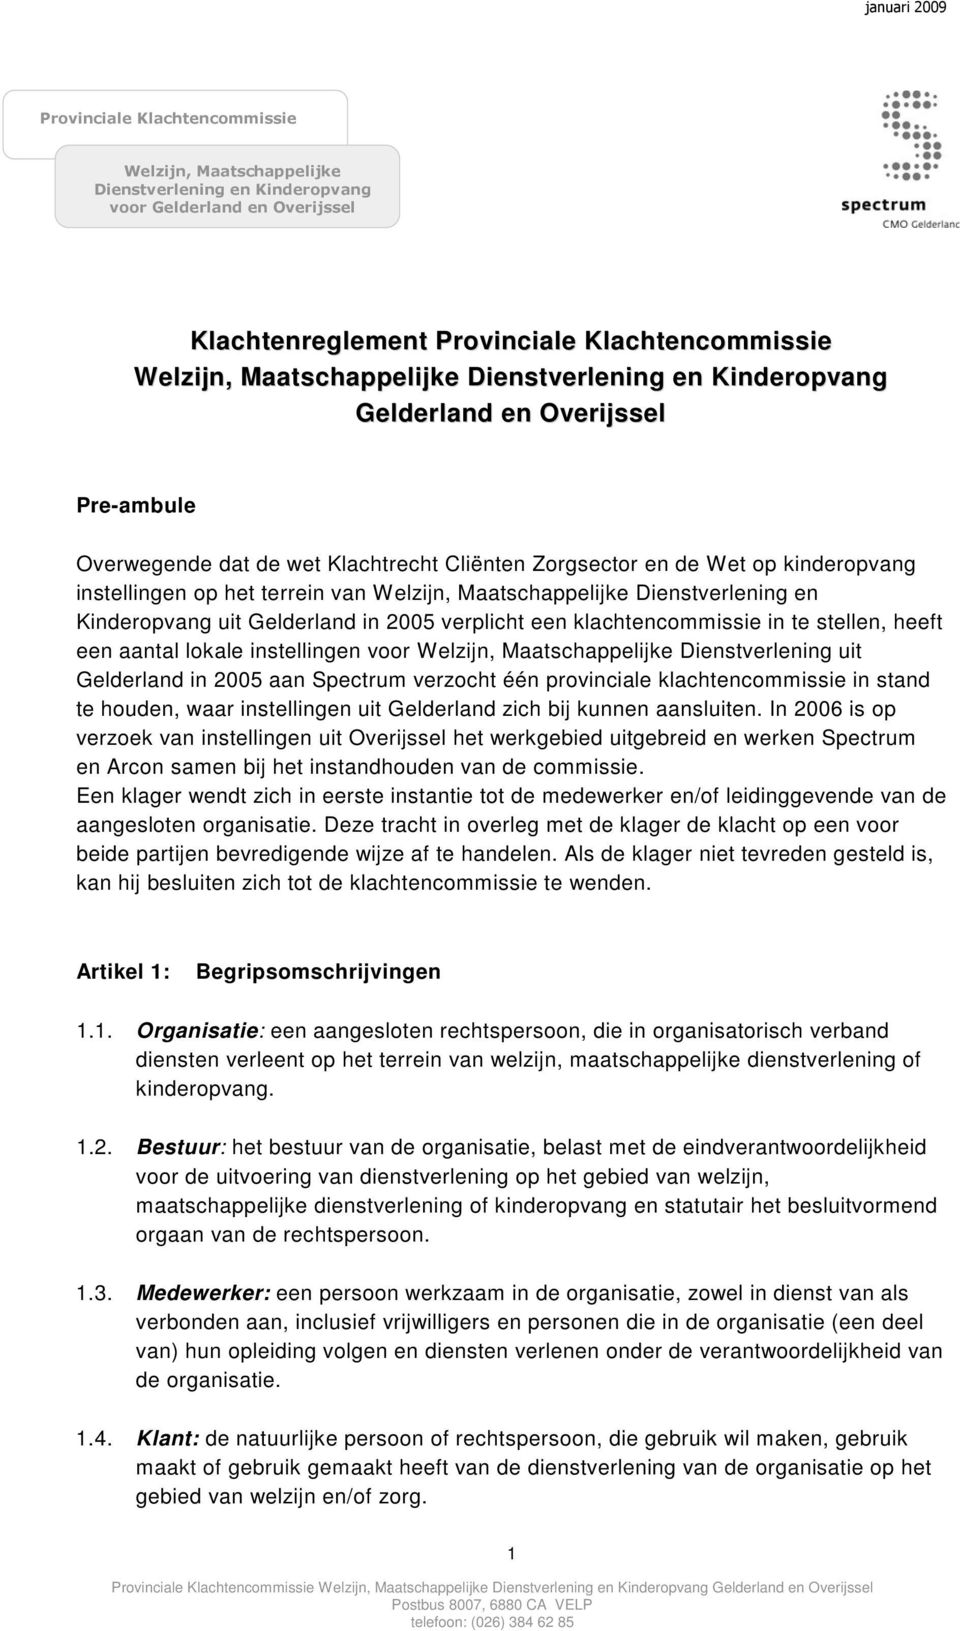 Welzijn, Maatschappelijke Dienstverlening en Kinderopvang uit Gelderland in 2005 verplicht een klachtencommissie in te stellen, heeft een aantal lokale instellingen voor Welzijn, Maatschappelijke